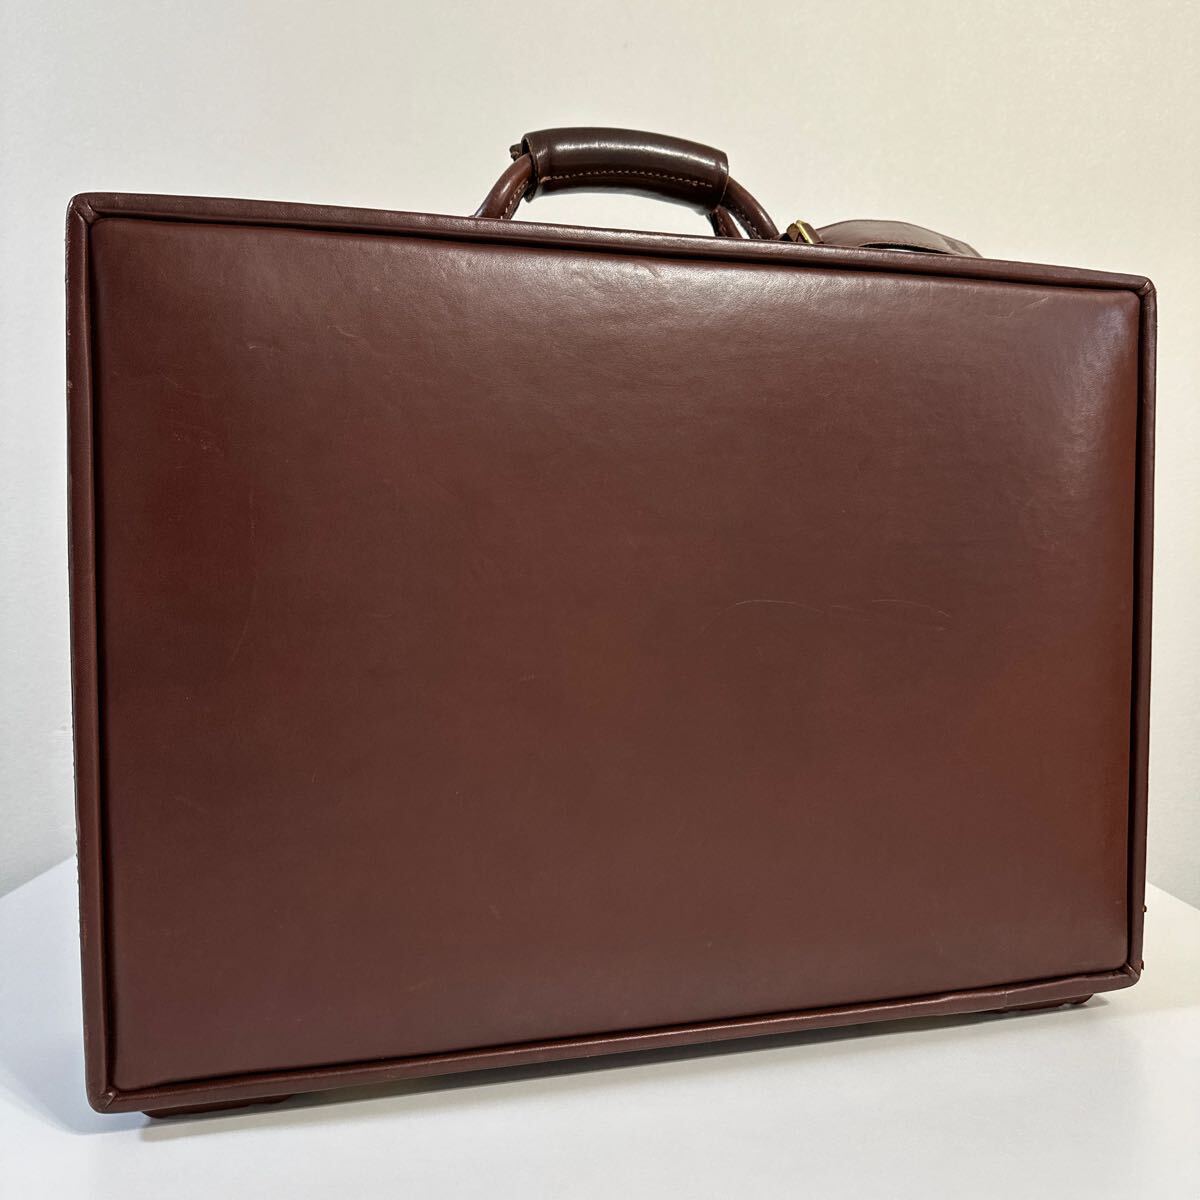 ハートマン hartmann ベルティングレザー アタッシュケース ビジネスバッグ トランク 鞄 茶 ブラウン ダイヤルロック式の画像1